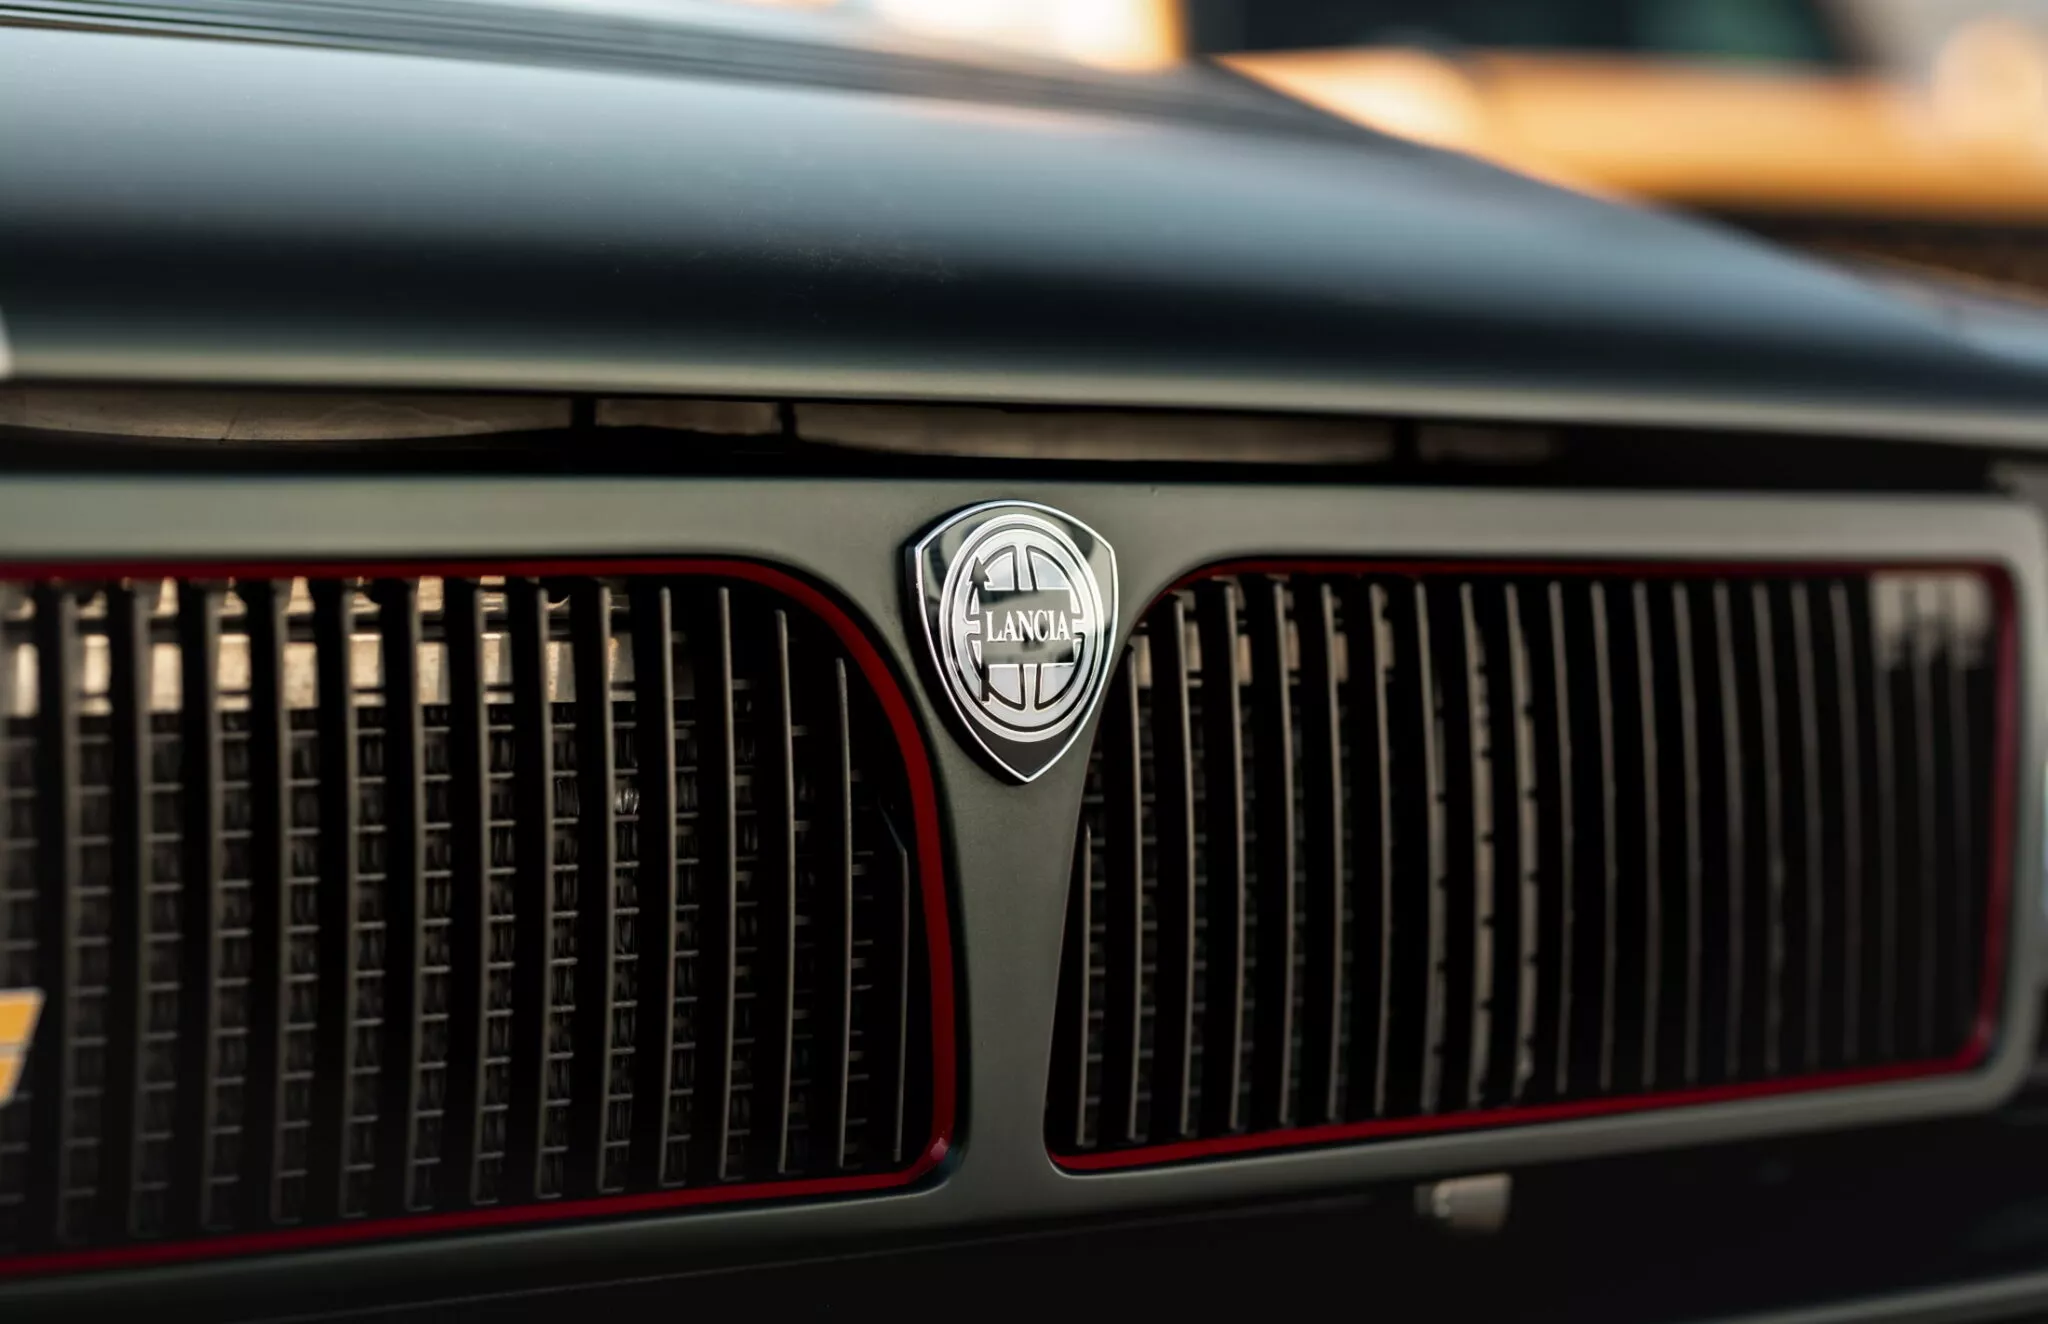 شركة مانهارت تكشف عن سيارة لانسيا كلاسيكية إيطالية تم تجديدها بالكامل وعرضها للبيع 10